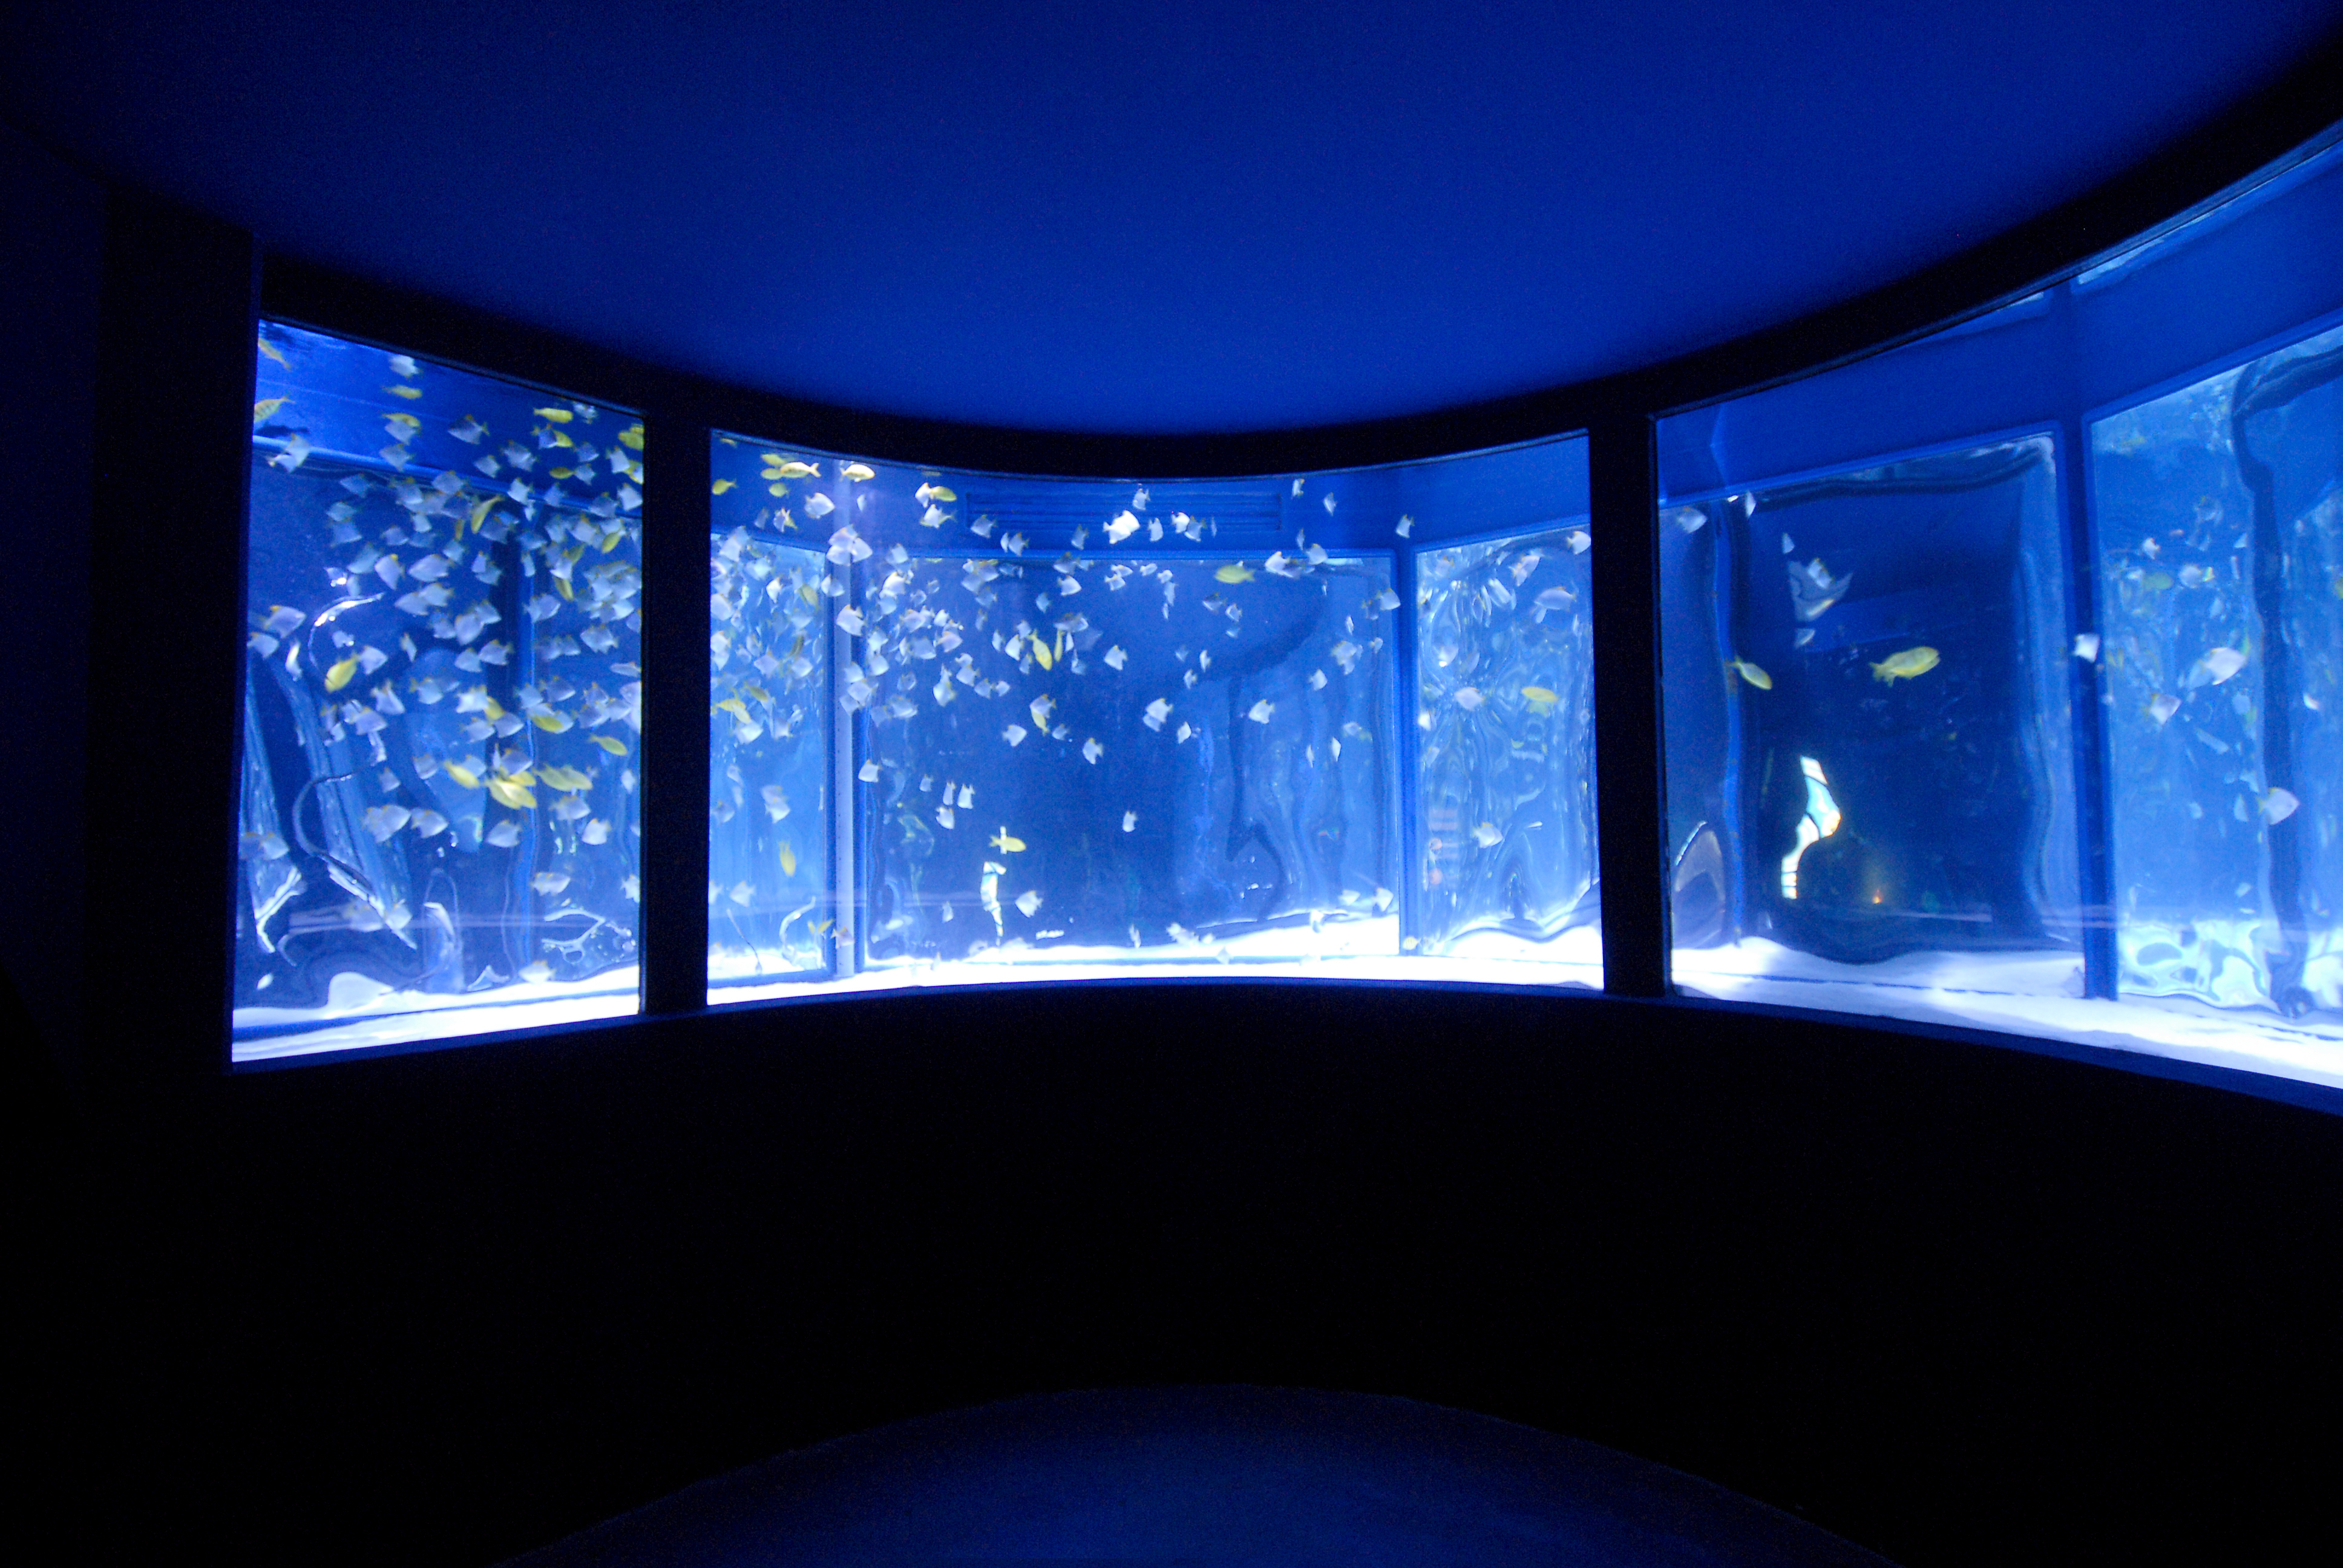 Gardaland SEA LIFE Aquarium - Ring-shaped tank